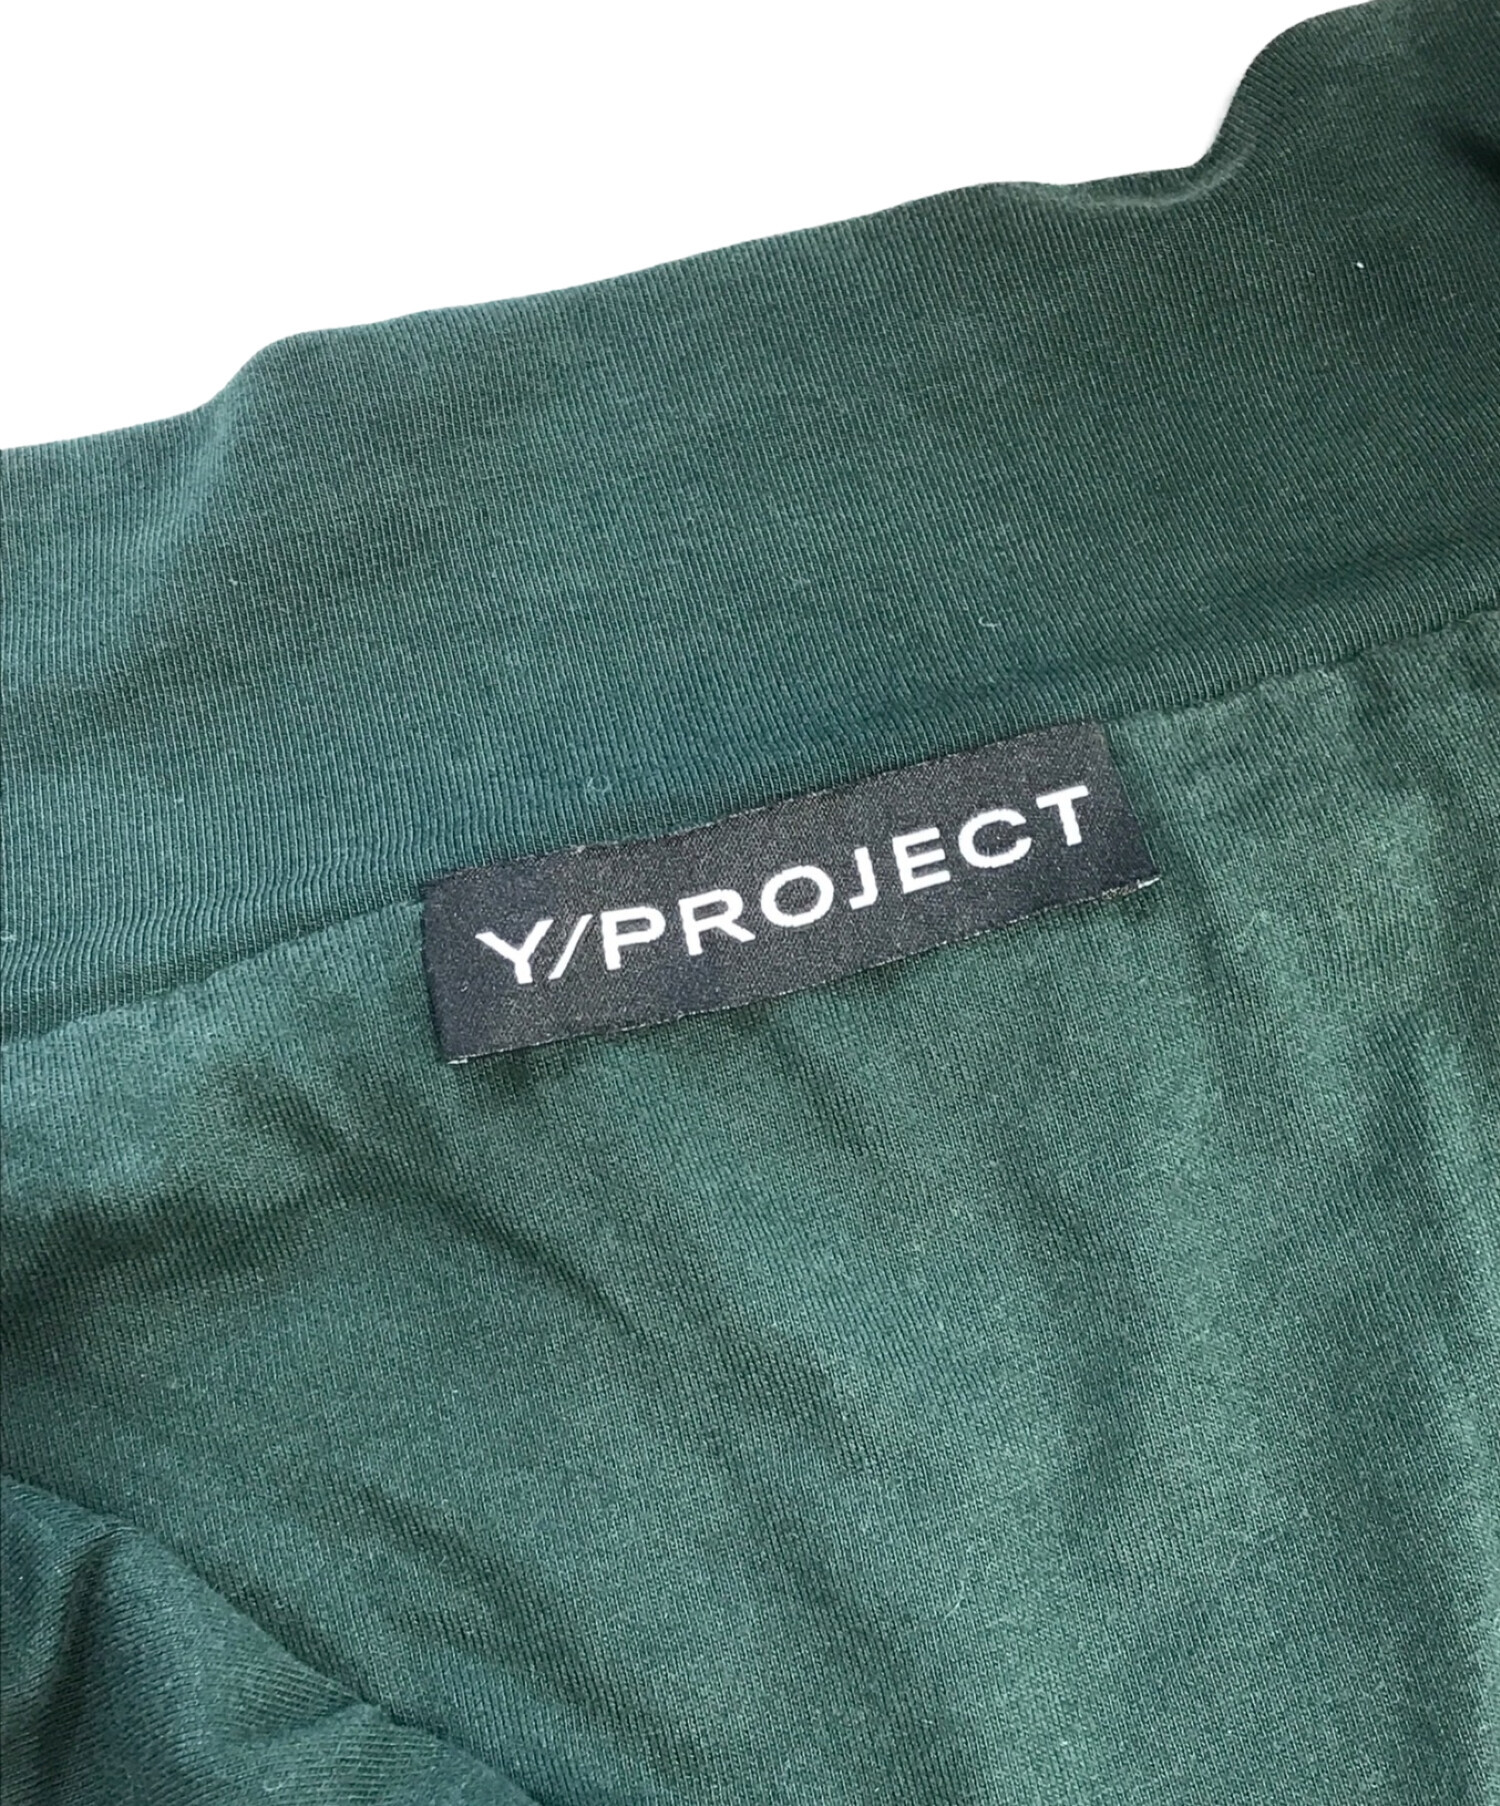 Y. PROJECT (ワイプロジェクト) トラックジャケット グリーン サイズ:M